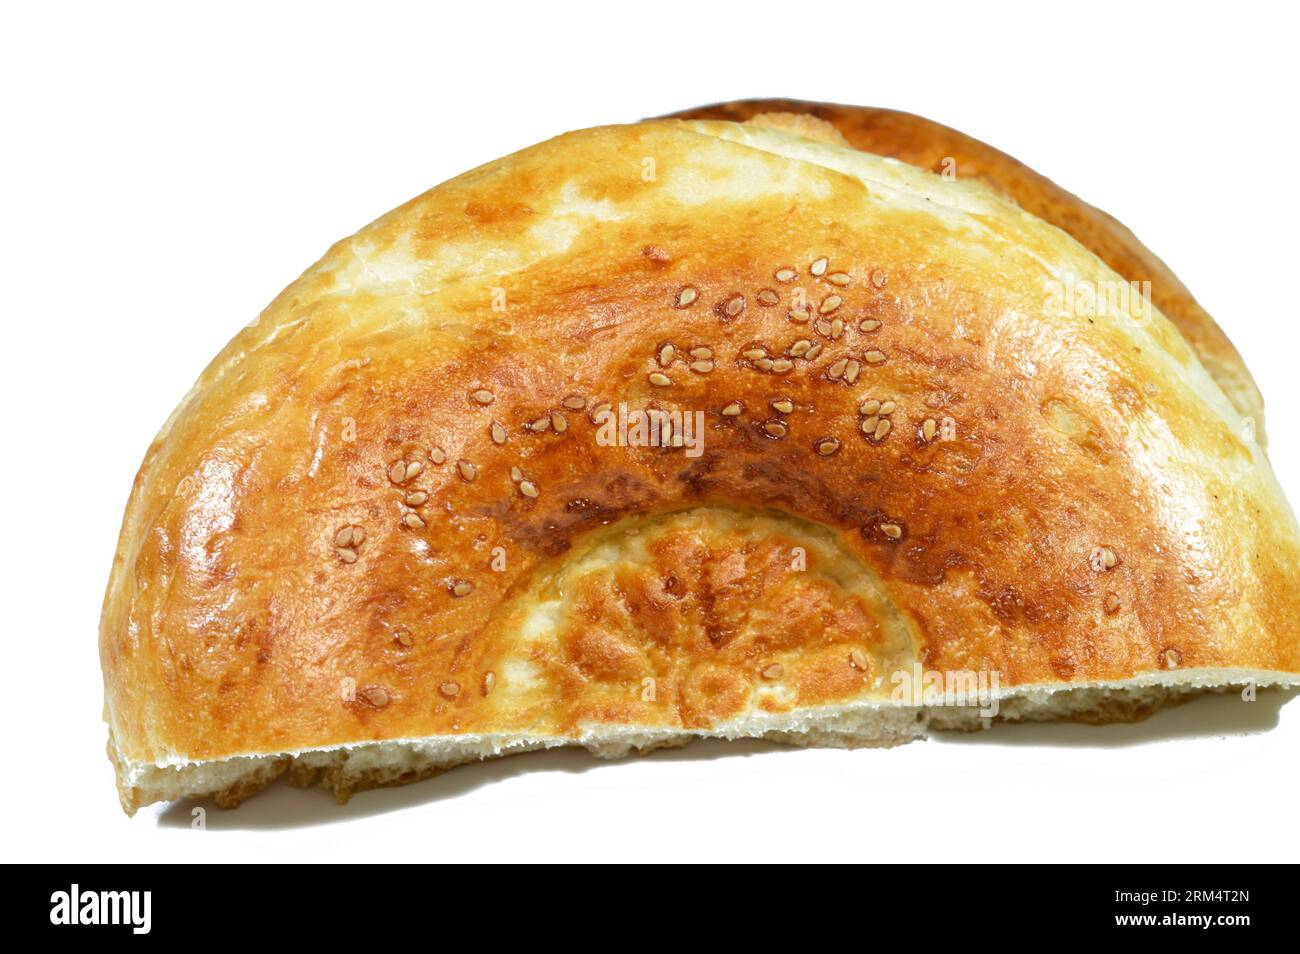 Tandyr nan usbekisches Brot, eine Art zentralasiatisches Brot, das oft mit Stempelmustern auf den Teig mit einem Brotstempel verziert wird, der als Chekich al bekannt ist Stockfoto